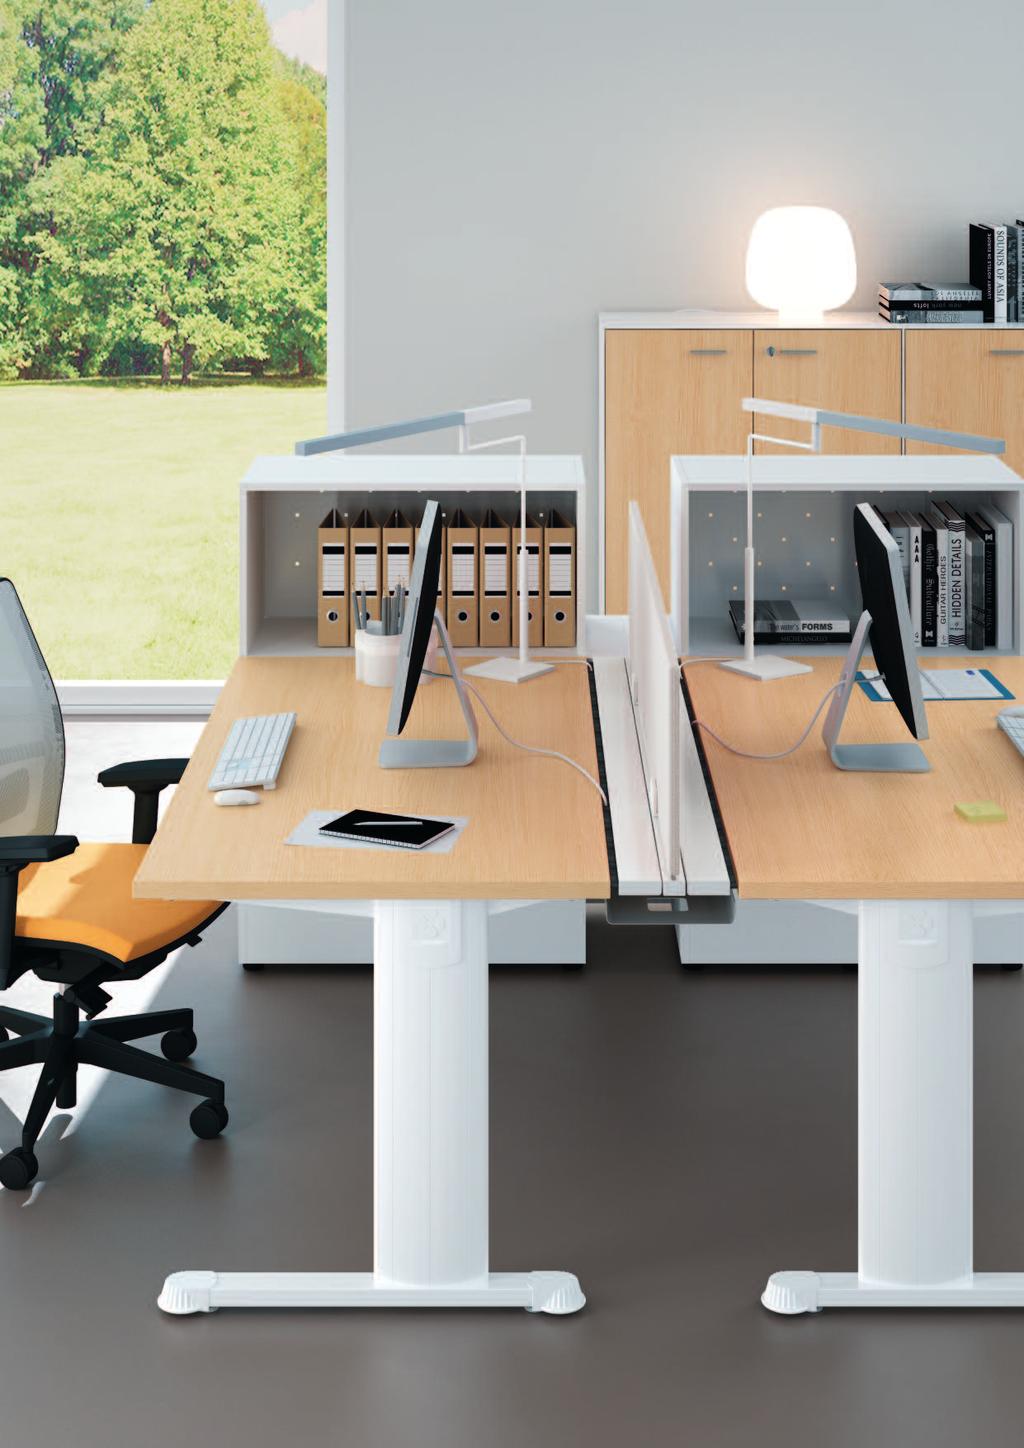 ModelloIdea+jet Interpretare la superficie di lavoro coniugando spazio e mobili contenitori.